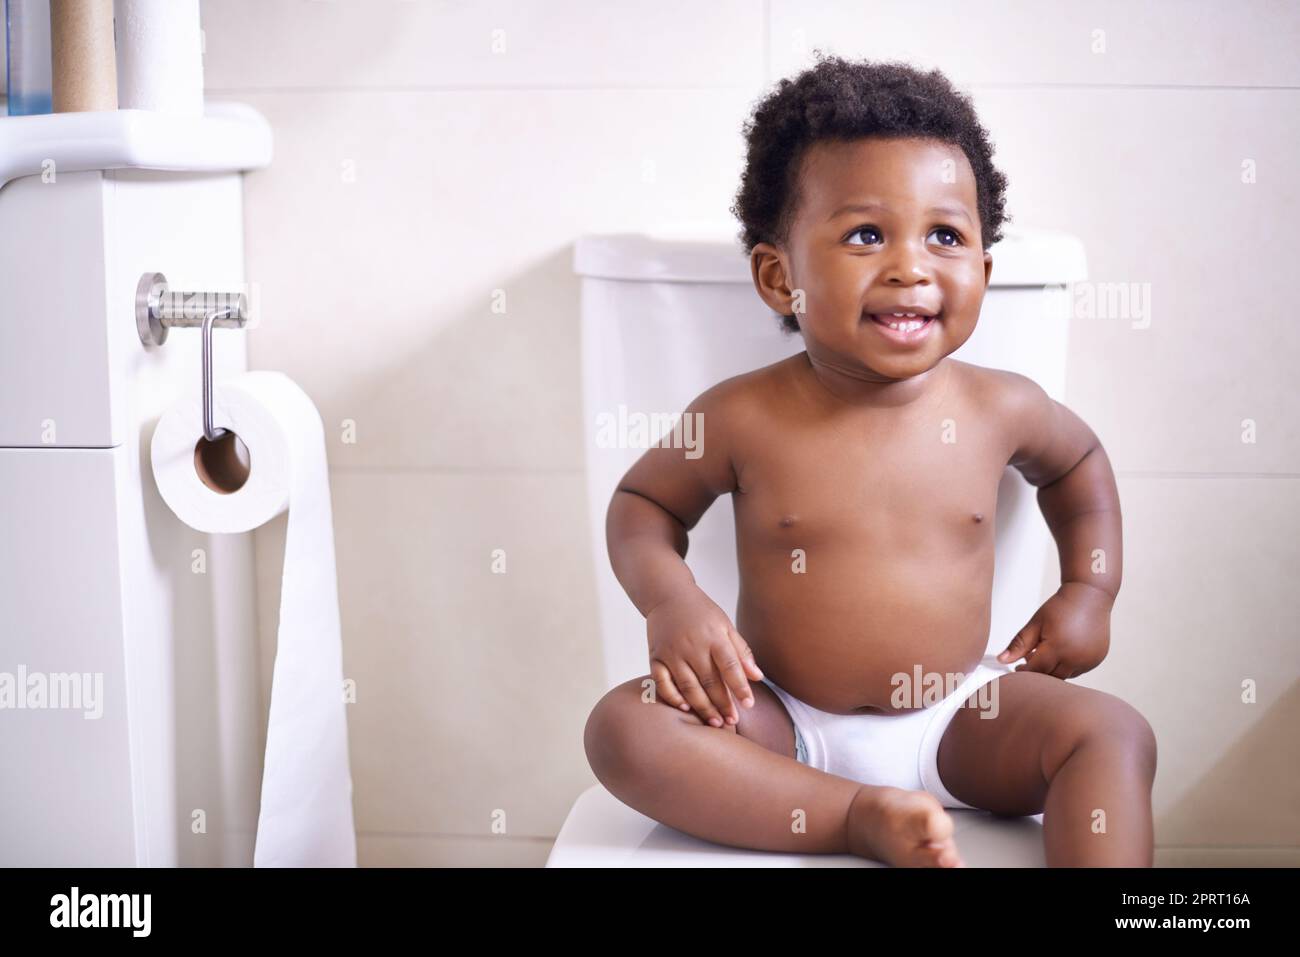 Je vais ace cette chose de formation de pot. Un adorable bébé garçon assis sur les toilettes dans la salle de bains. Banque D'Images